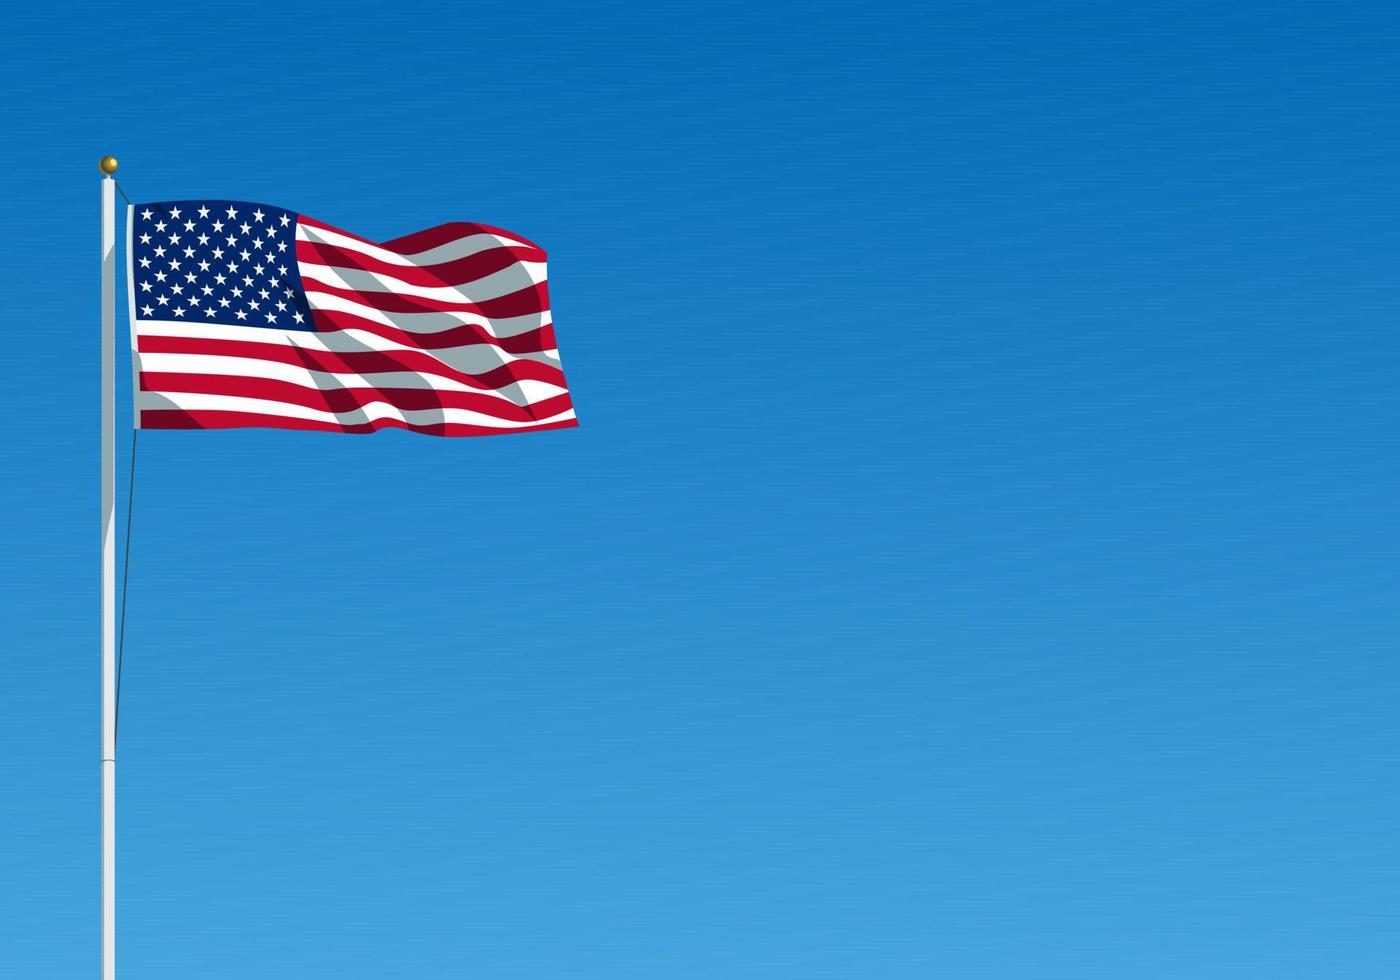 la bandera de Estados Unidos ondeando en el viento. bandera americana colgada en el asta de la bandera contra el cielo azul claro. ilustración vectorial realista vector